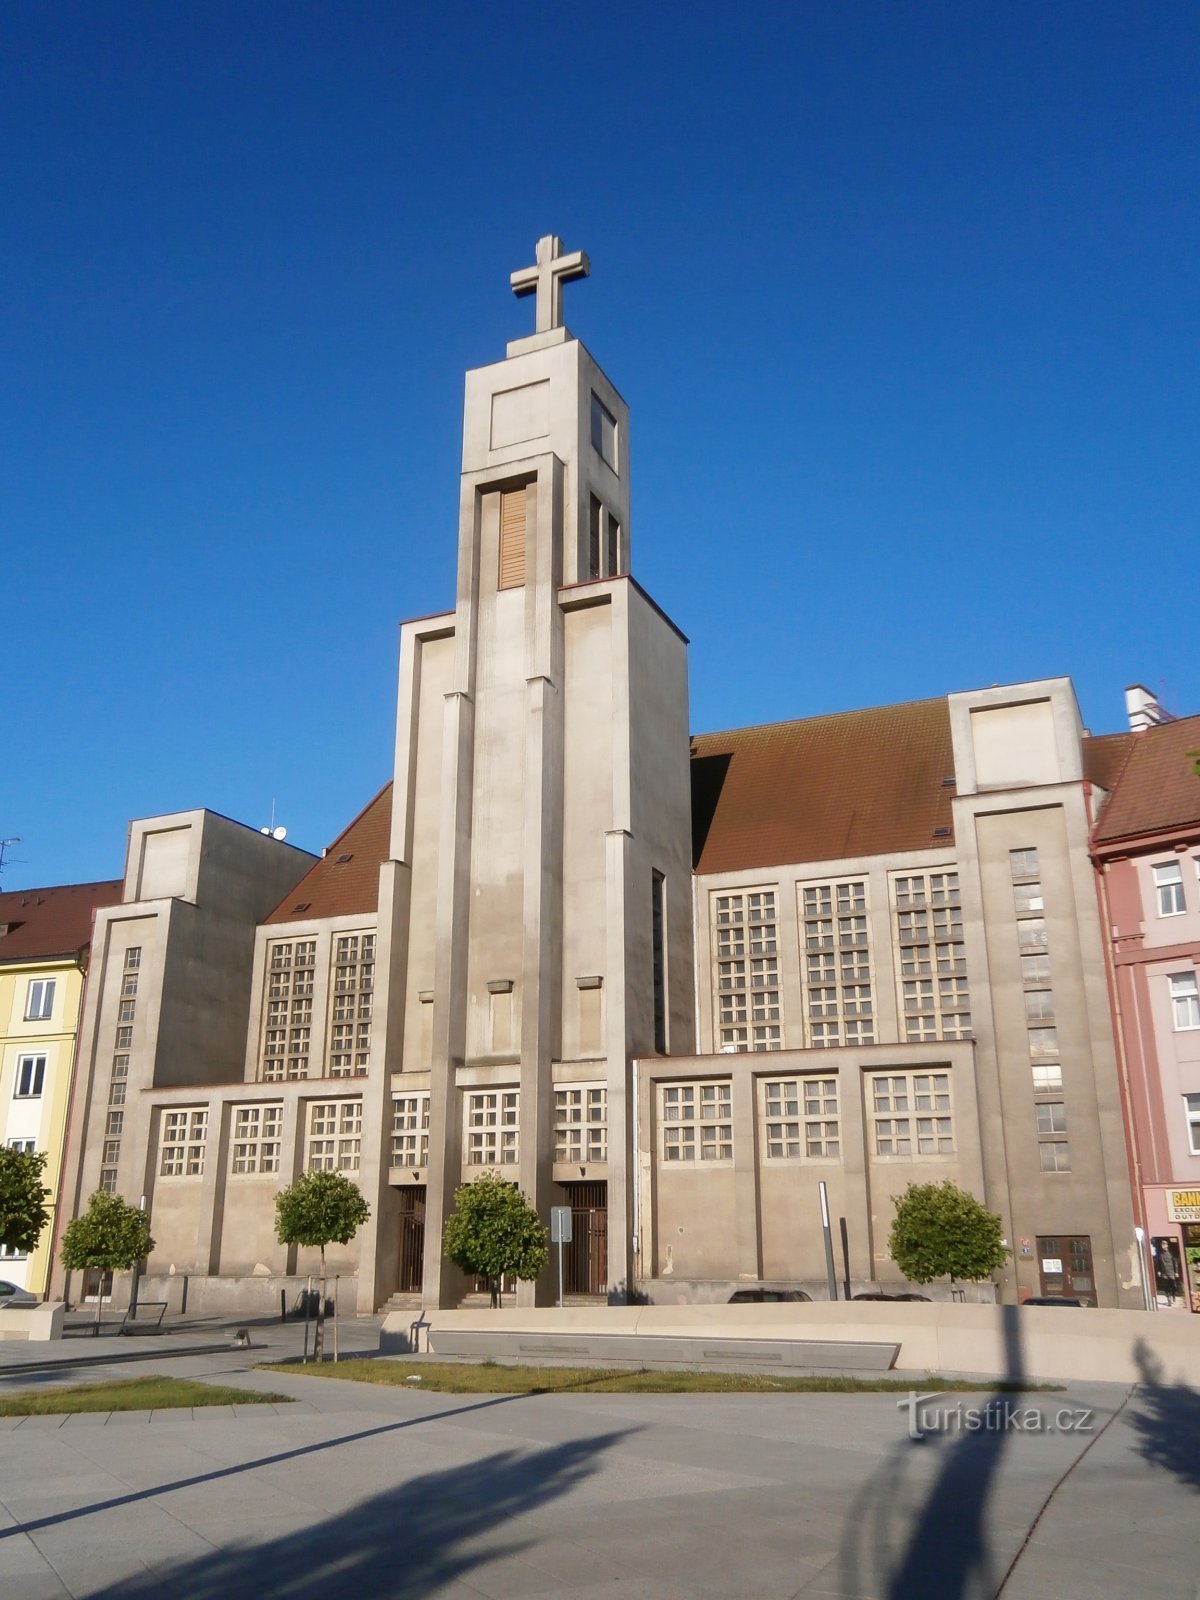 Herran jumalallisen sydämen kirkko (Hradec Králové, 25.6.2017)